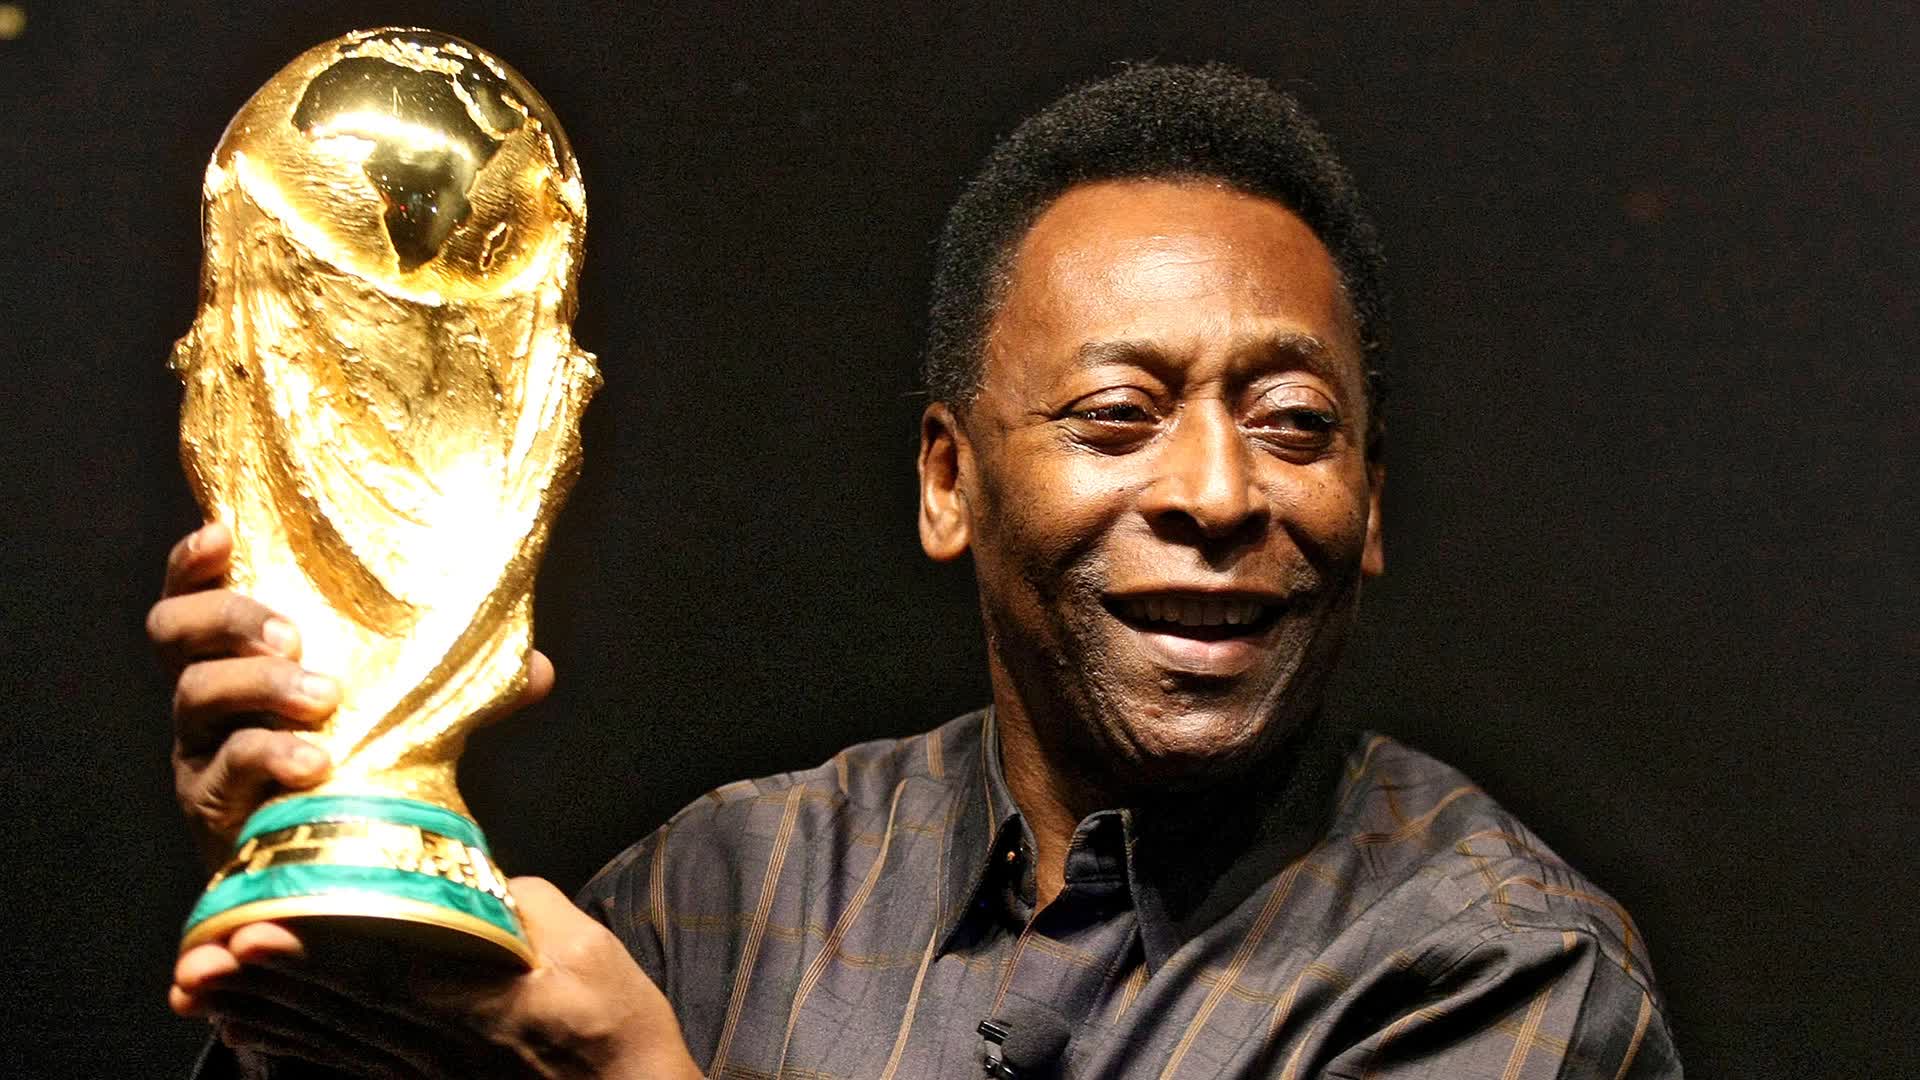 Cuộc đời thăng trầm của Vua bóng đá Pelé: Từng không mua nổi 1 quả bóng đến huyền thoại 3 lần vô địch World Cup, tuổi 82 sức khỏe suy yếu, phải chống chọi với nhiều loại bệnh - Ảnh 3.